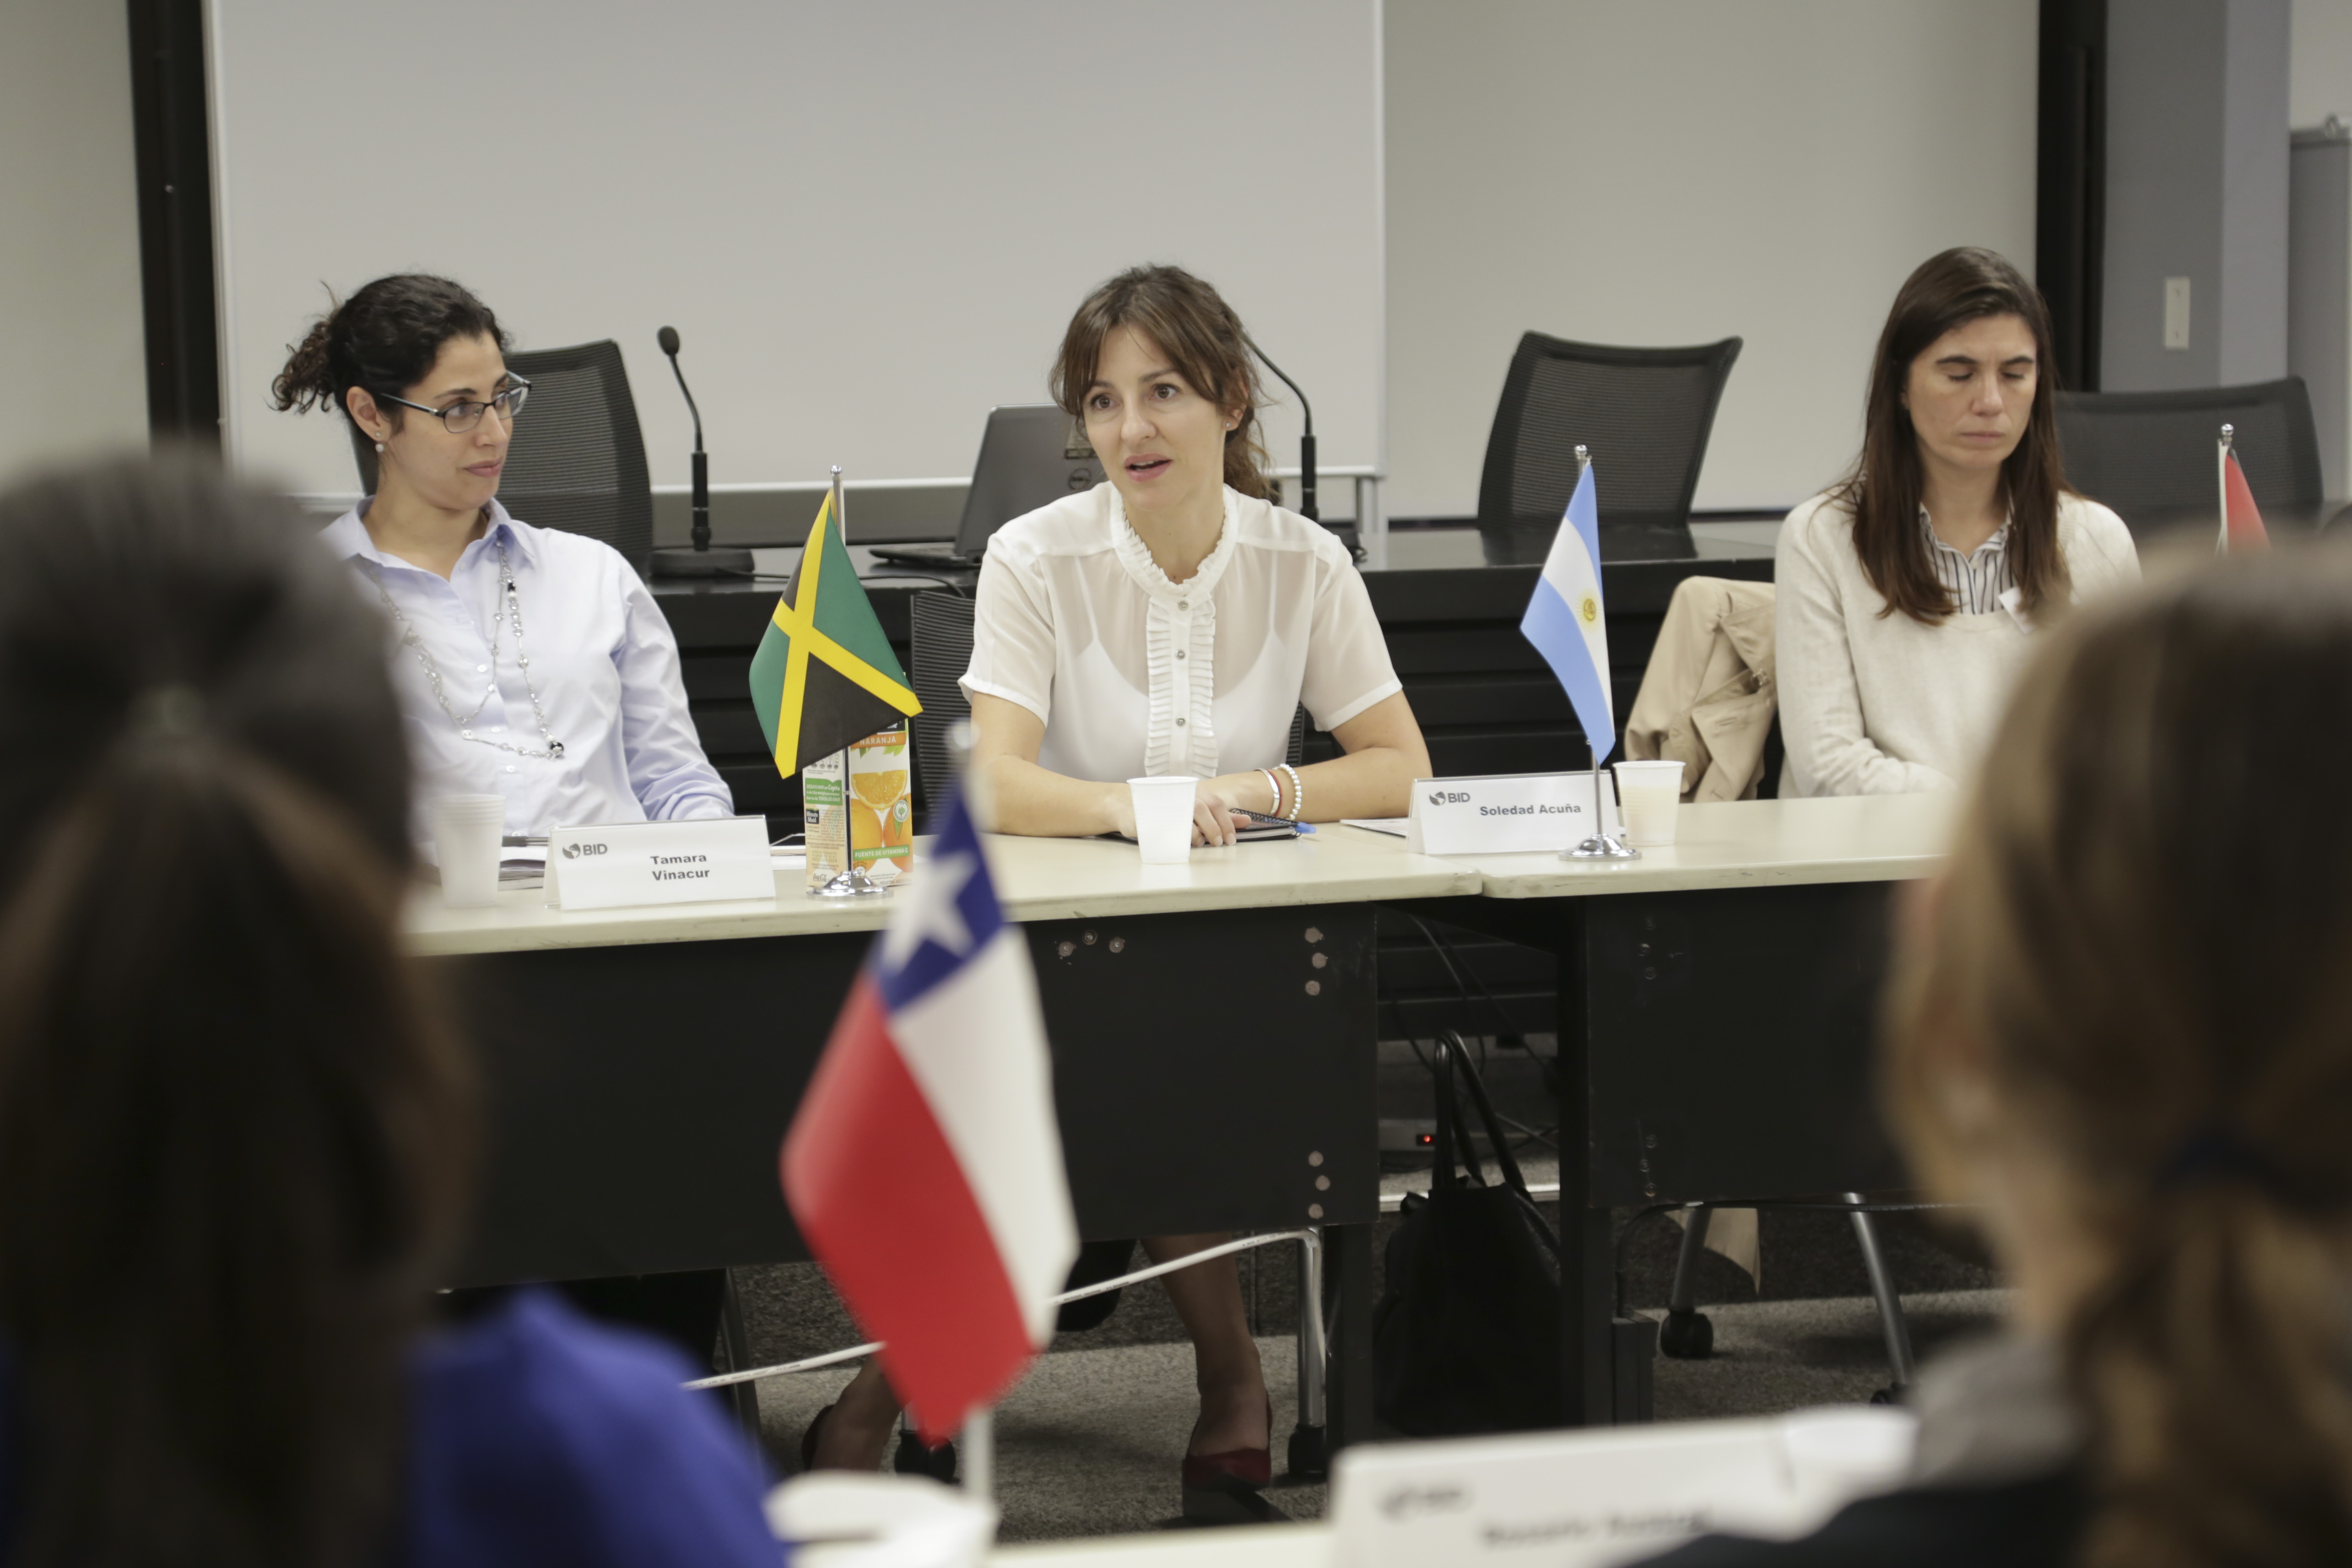 Encuentro de investigación de habilidades socioemocionales en los sistemas educativos de América Latina